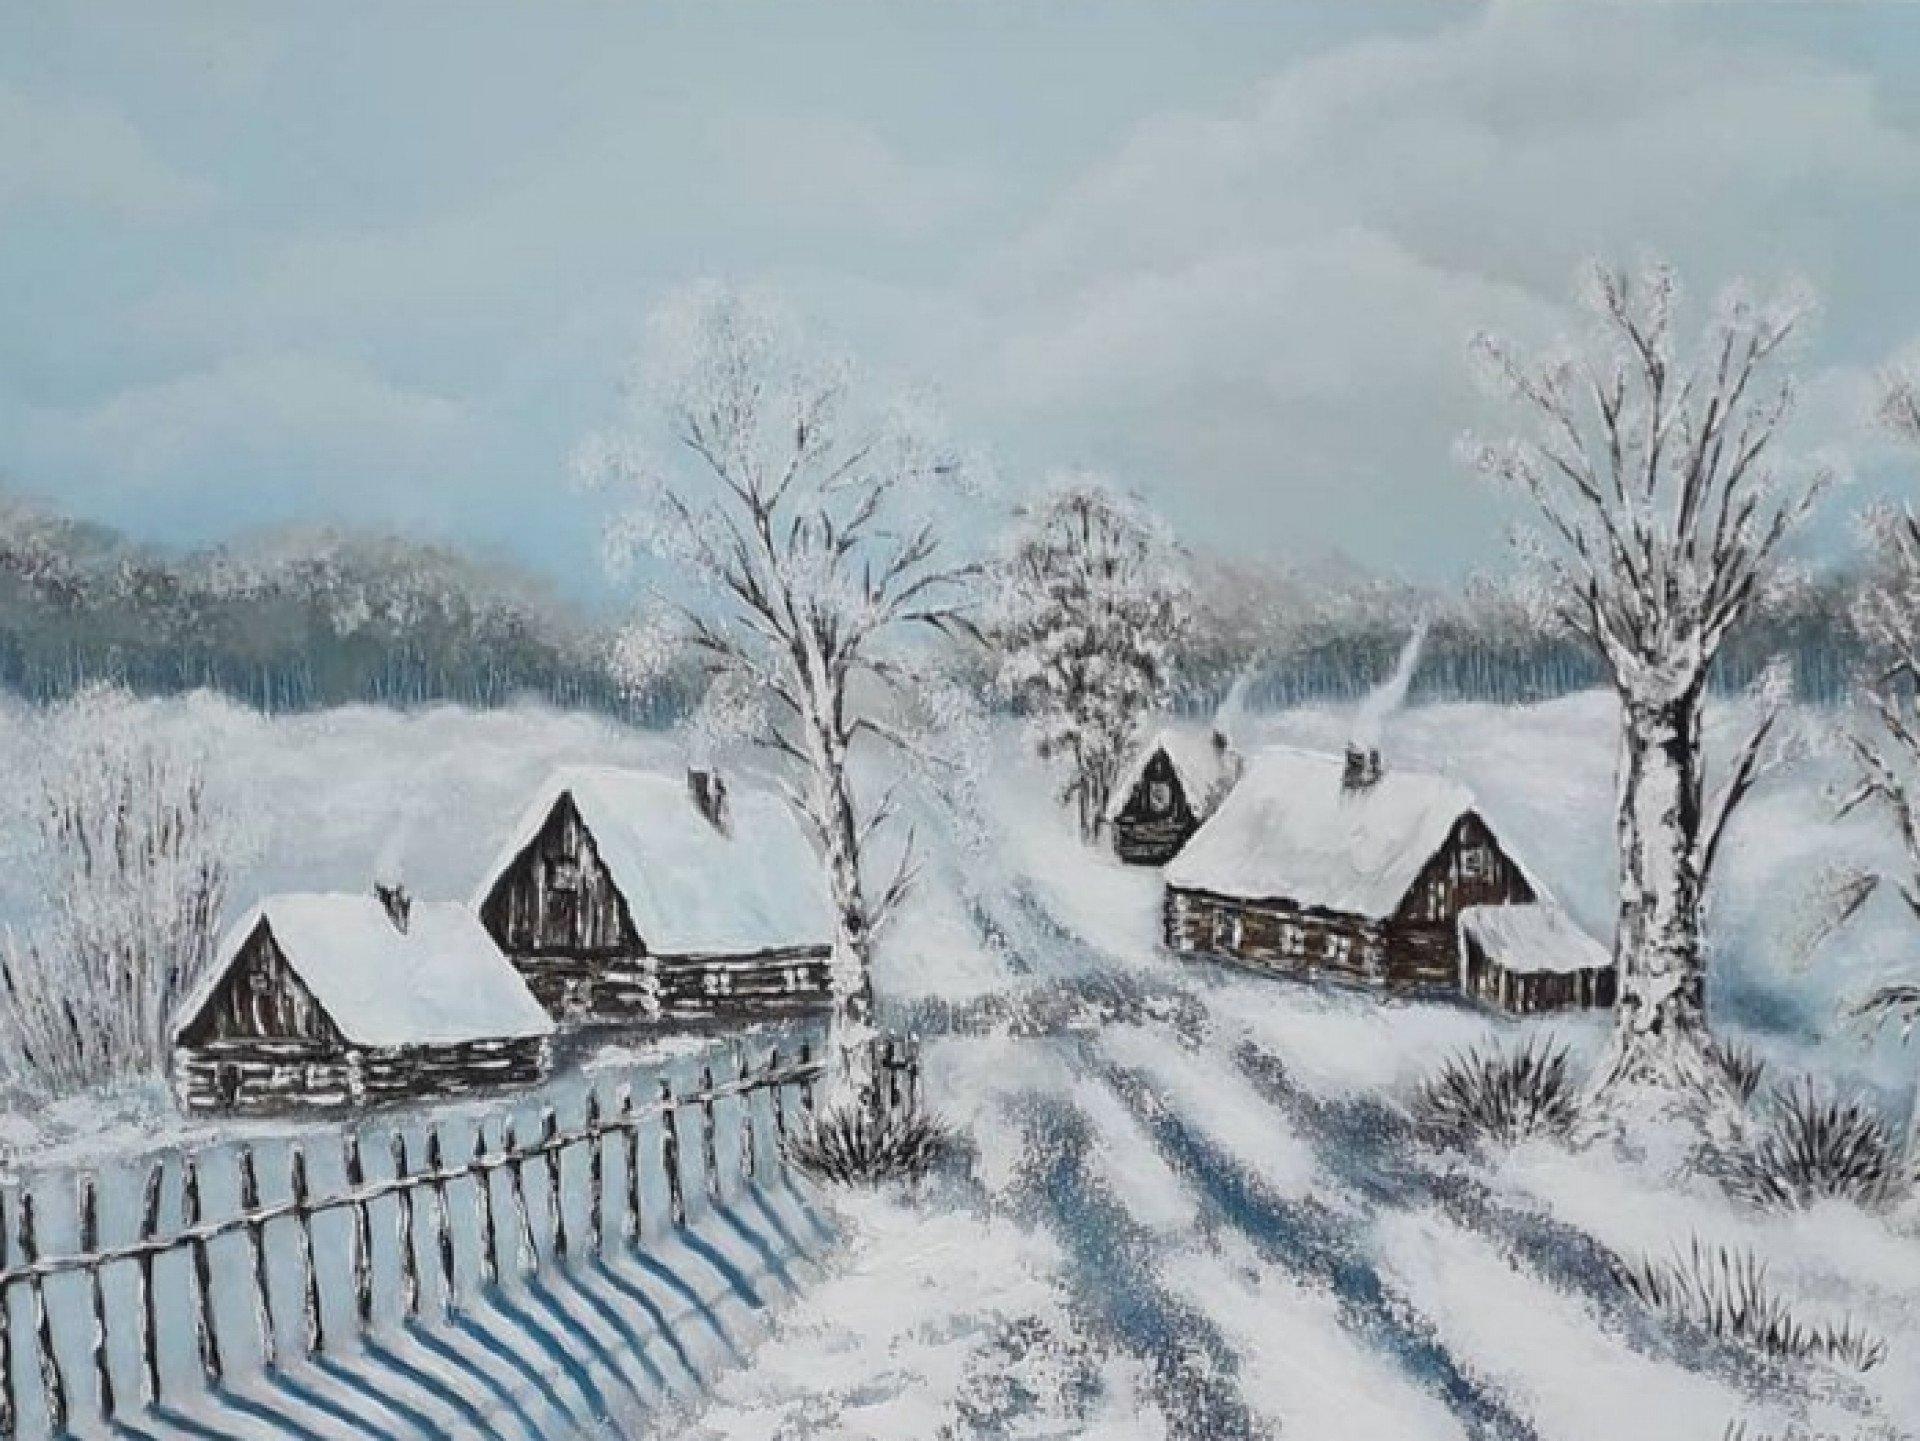 Купить картину Зима в деревне в Москве от художника Боброва Юля